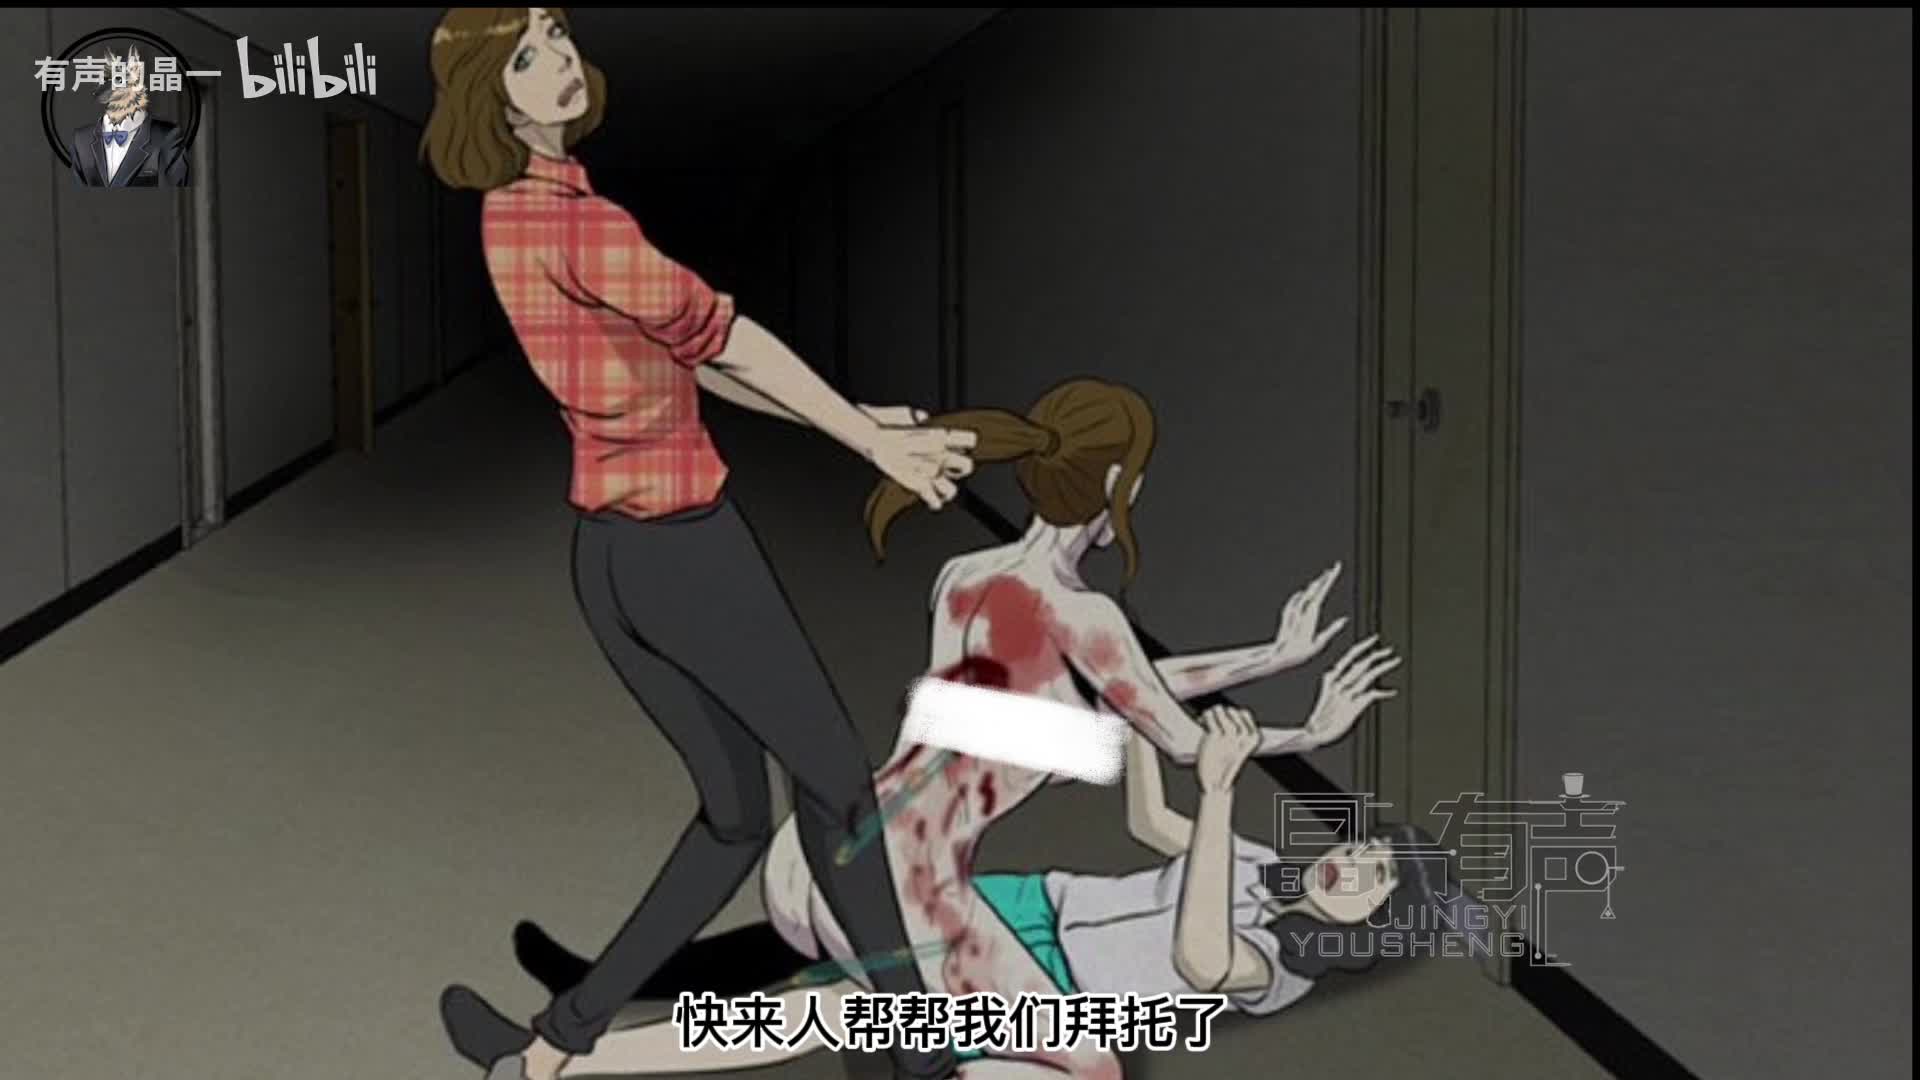 全网最热的韩国丧尸漫画，让我们重新审视一下电视中的阿扎西！